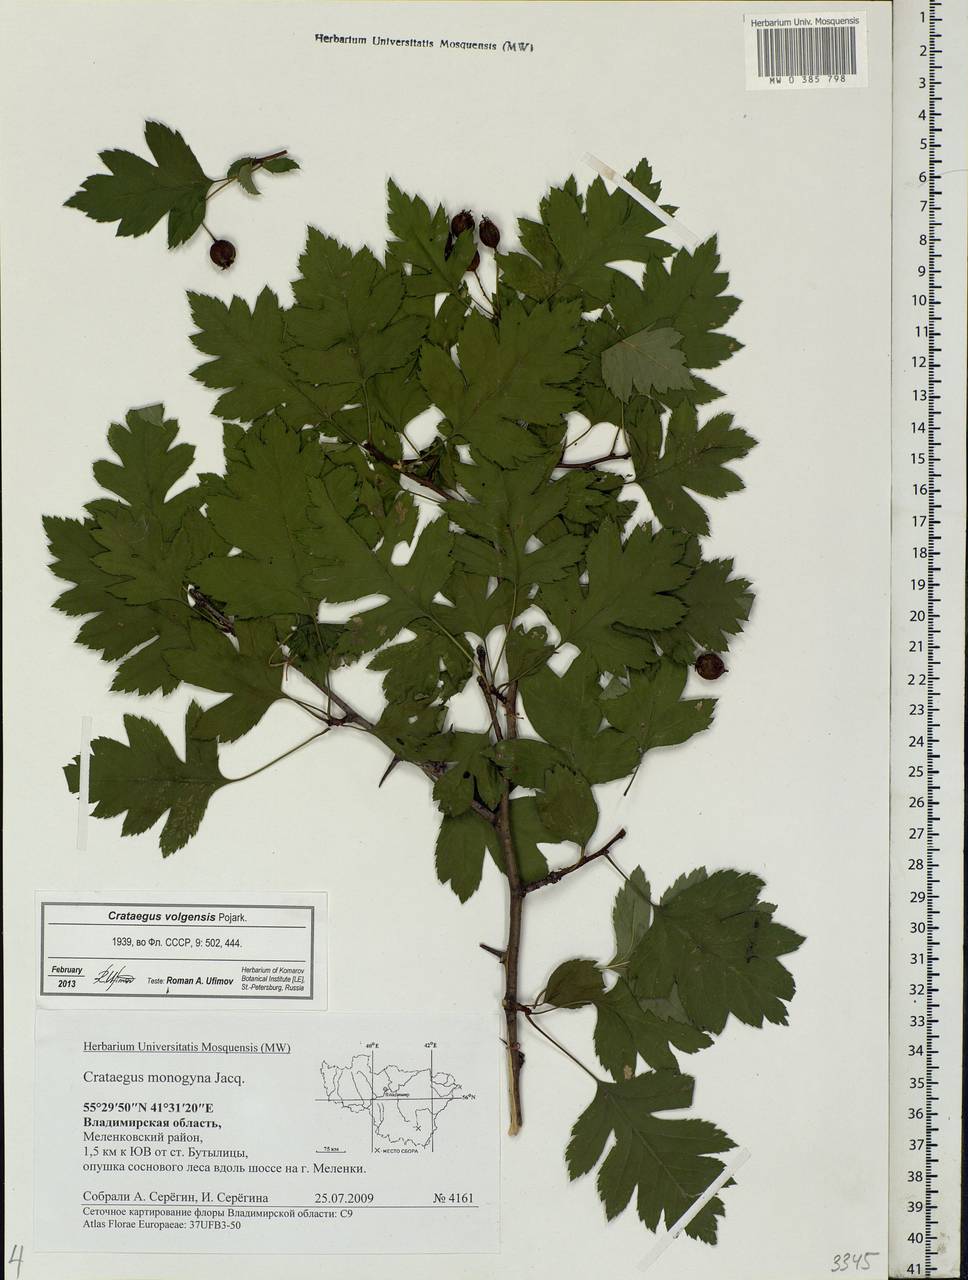 Crataegus ambigua subsp. ambigua, Eastern Europe, Central region (E4) (Russia)